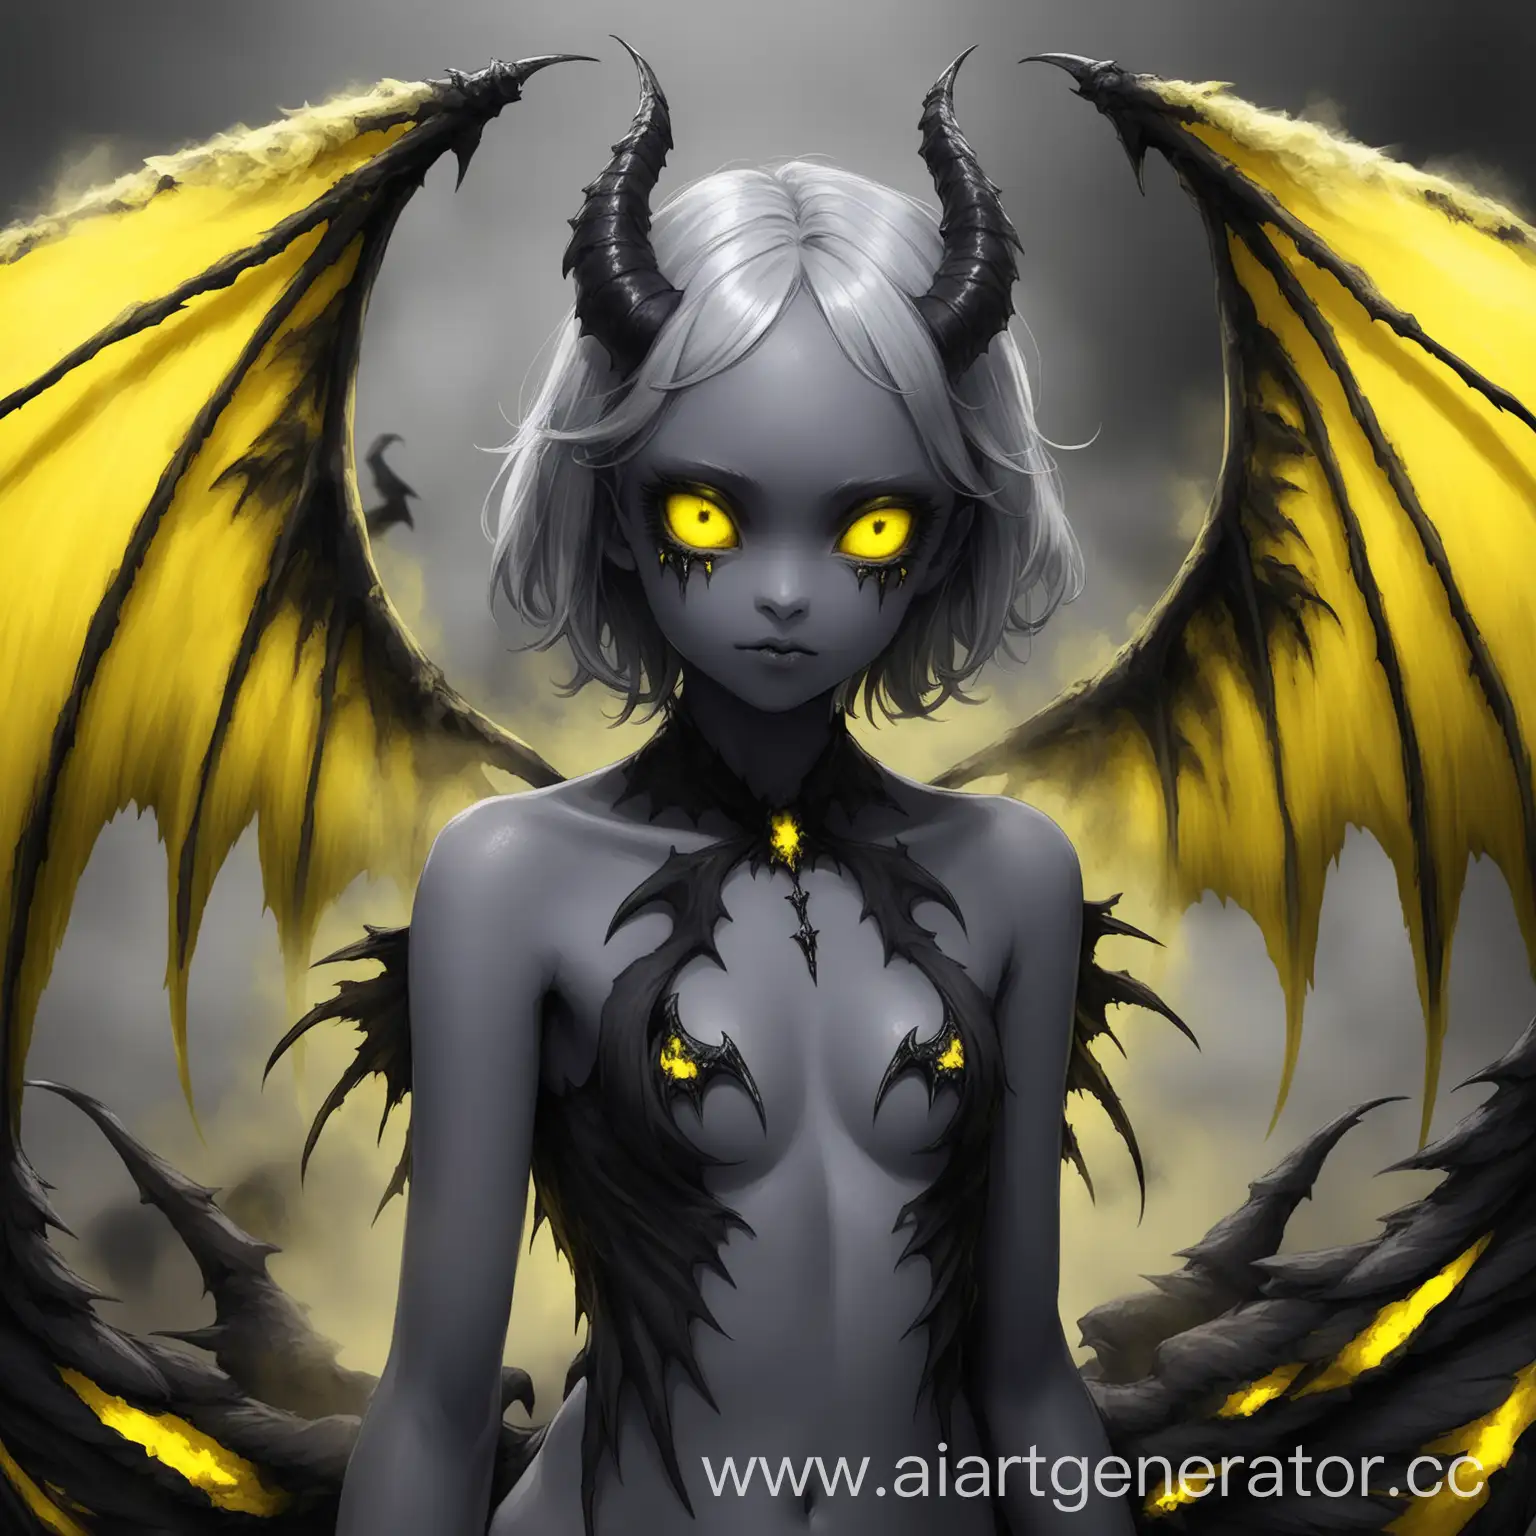 gray skin, sulfur eyes and wings, demon wings